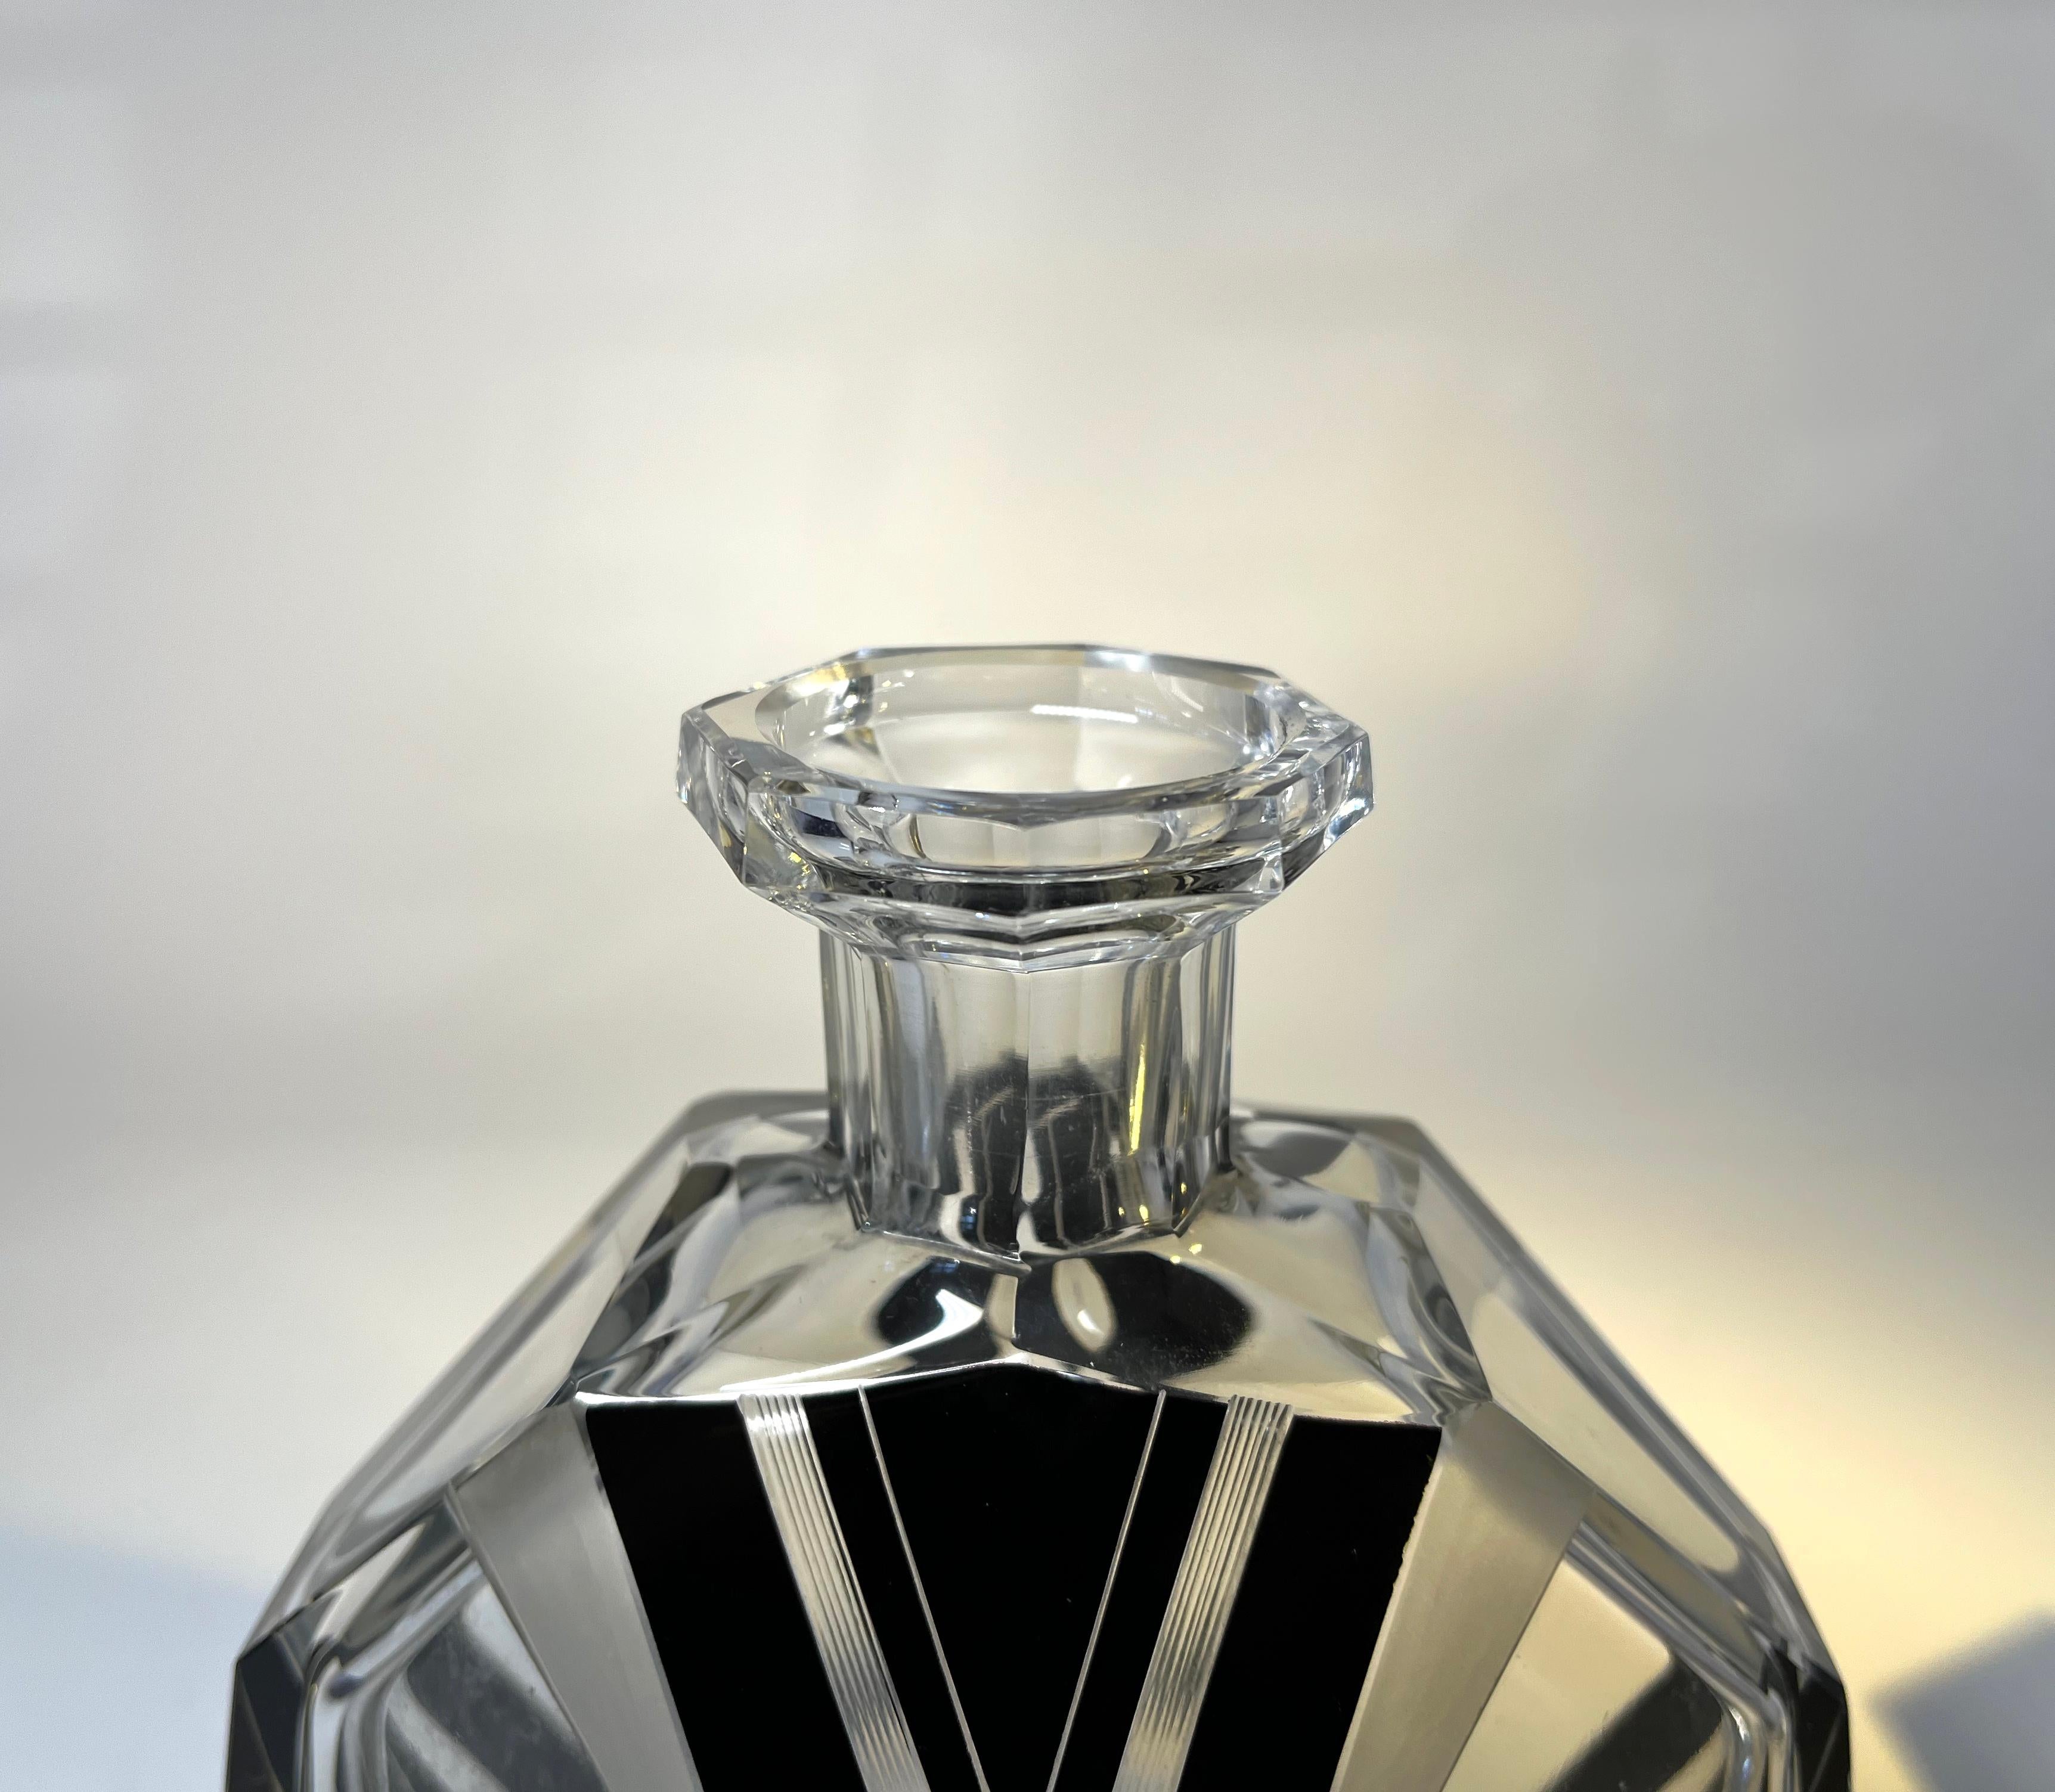 Oversized, Decadent Art Deco Czech Crystal Bohemian Perfume Flacon 1930's For Sale 3